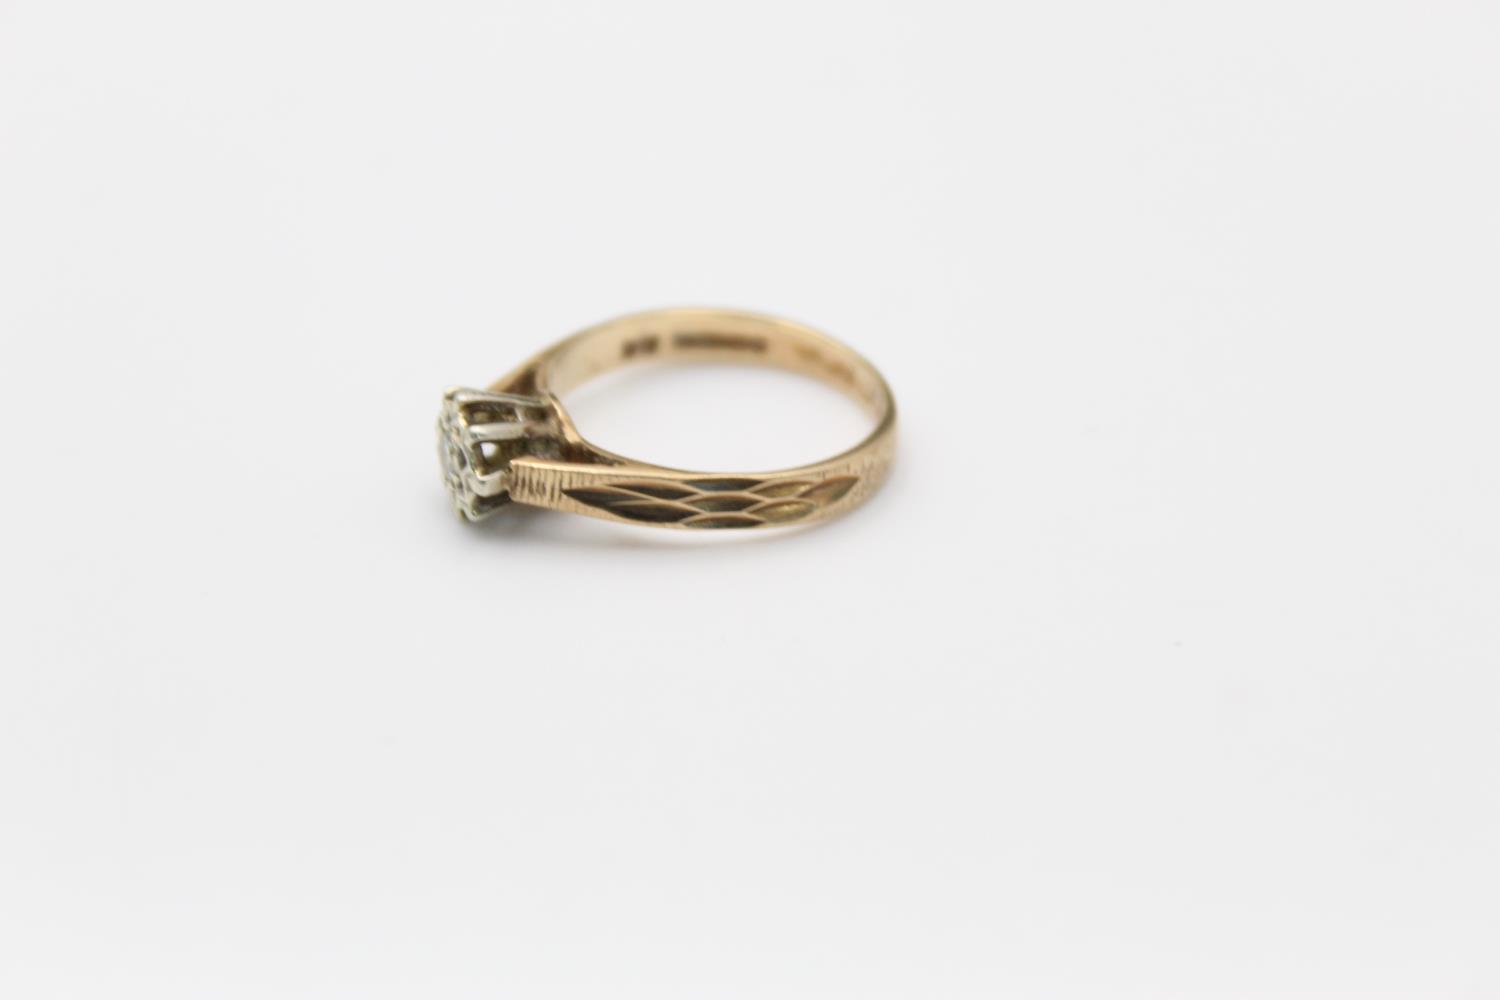 Vintage 9ct gold diamond detail ring 2.6g Size N - Image 2 of 5